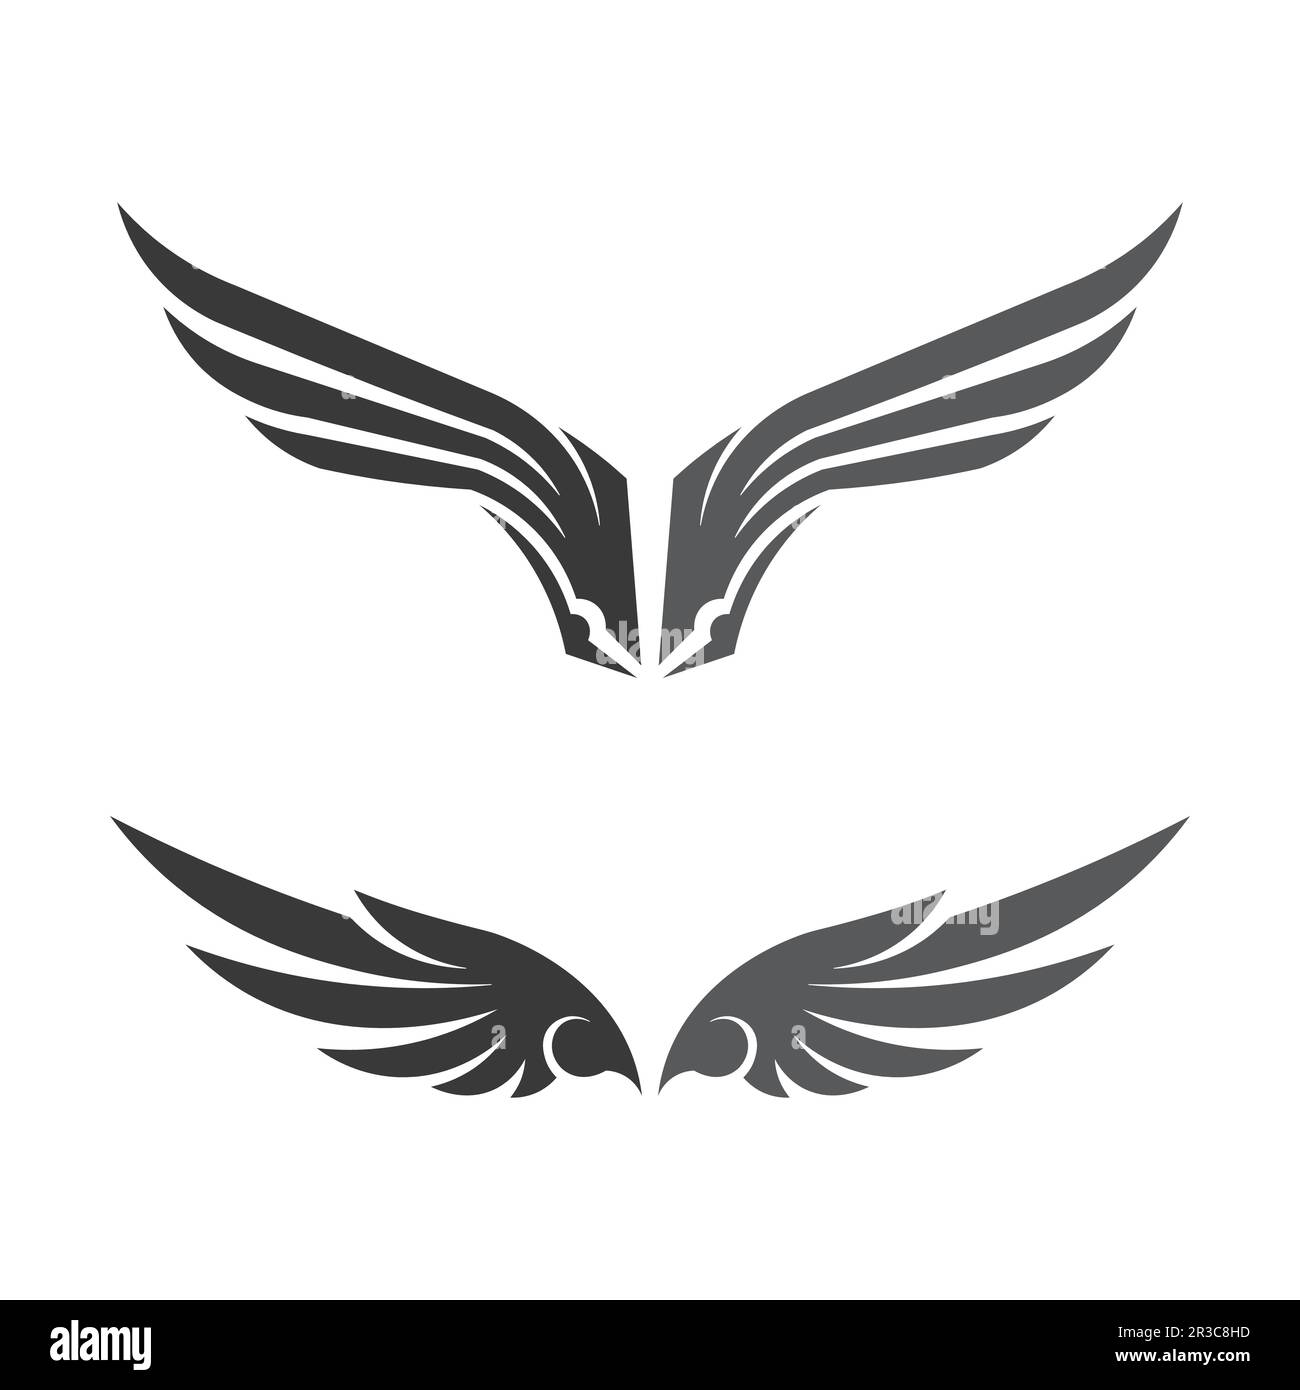 Logo De Alas De Angel Vectores, Iconos, Gráficos y Fondos para Descargar  Gratis